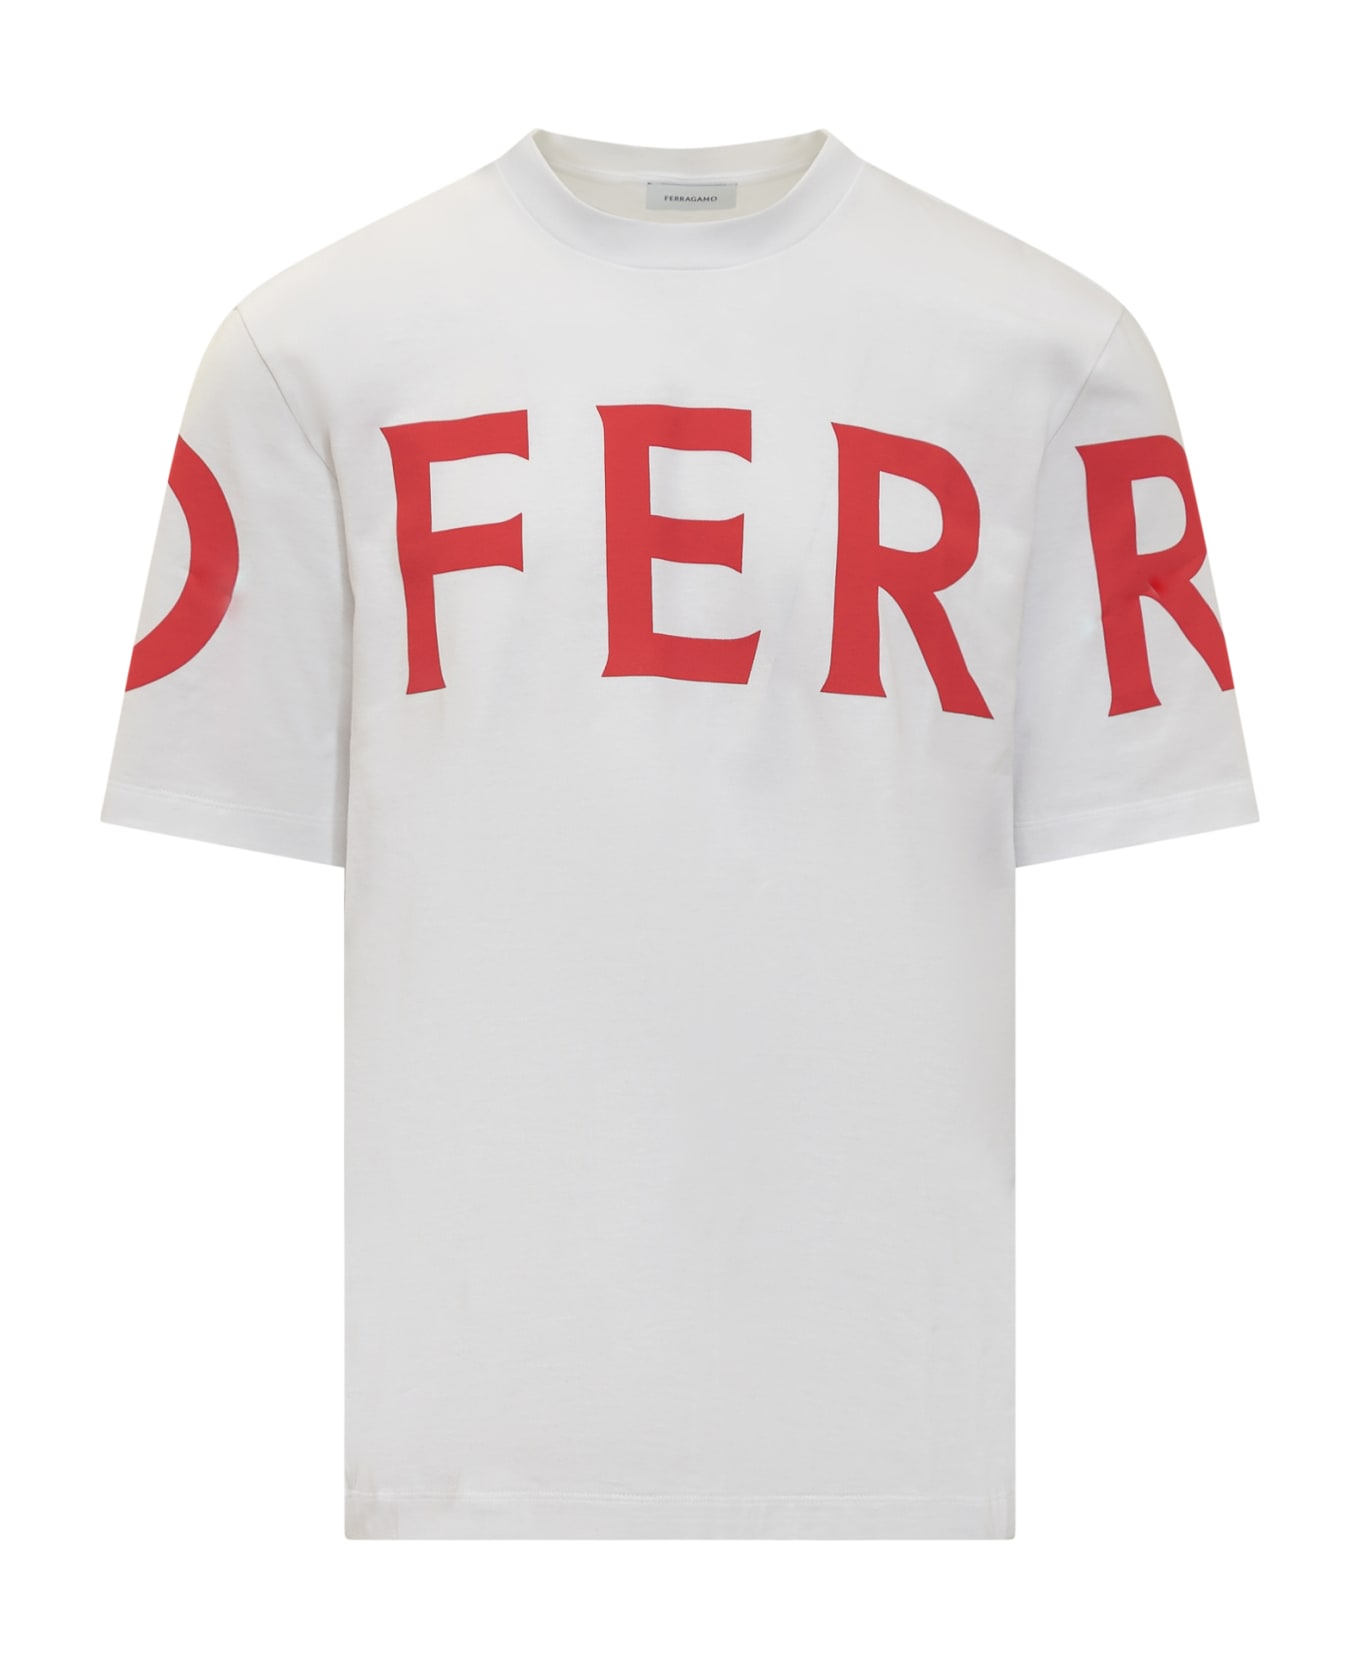 Ferragamo Manifesto T-shirt - WHITE/NEW RED シャツ